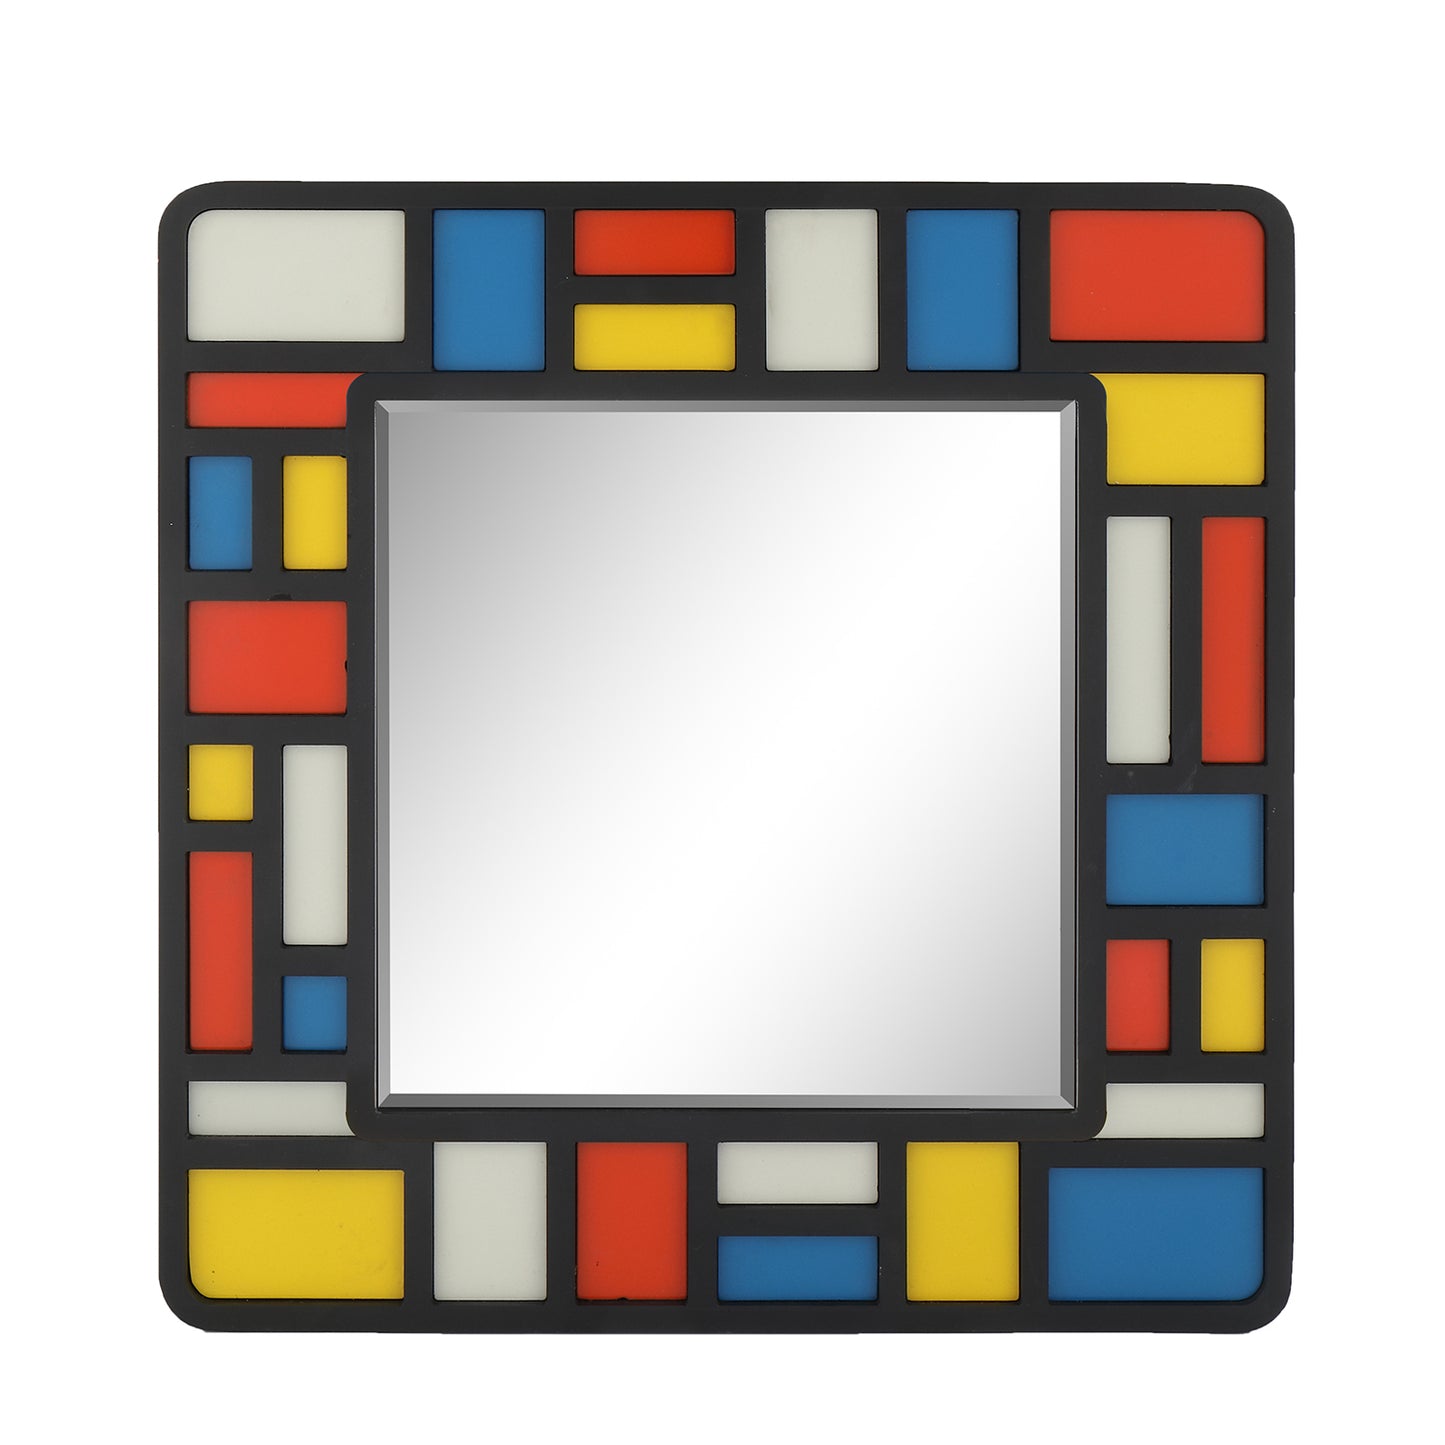 MacLuu Piet Mondrian Abstract Wall Mirror